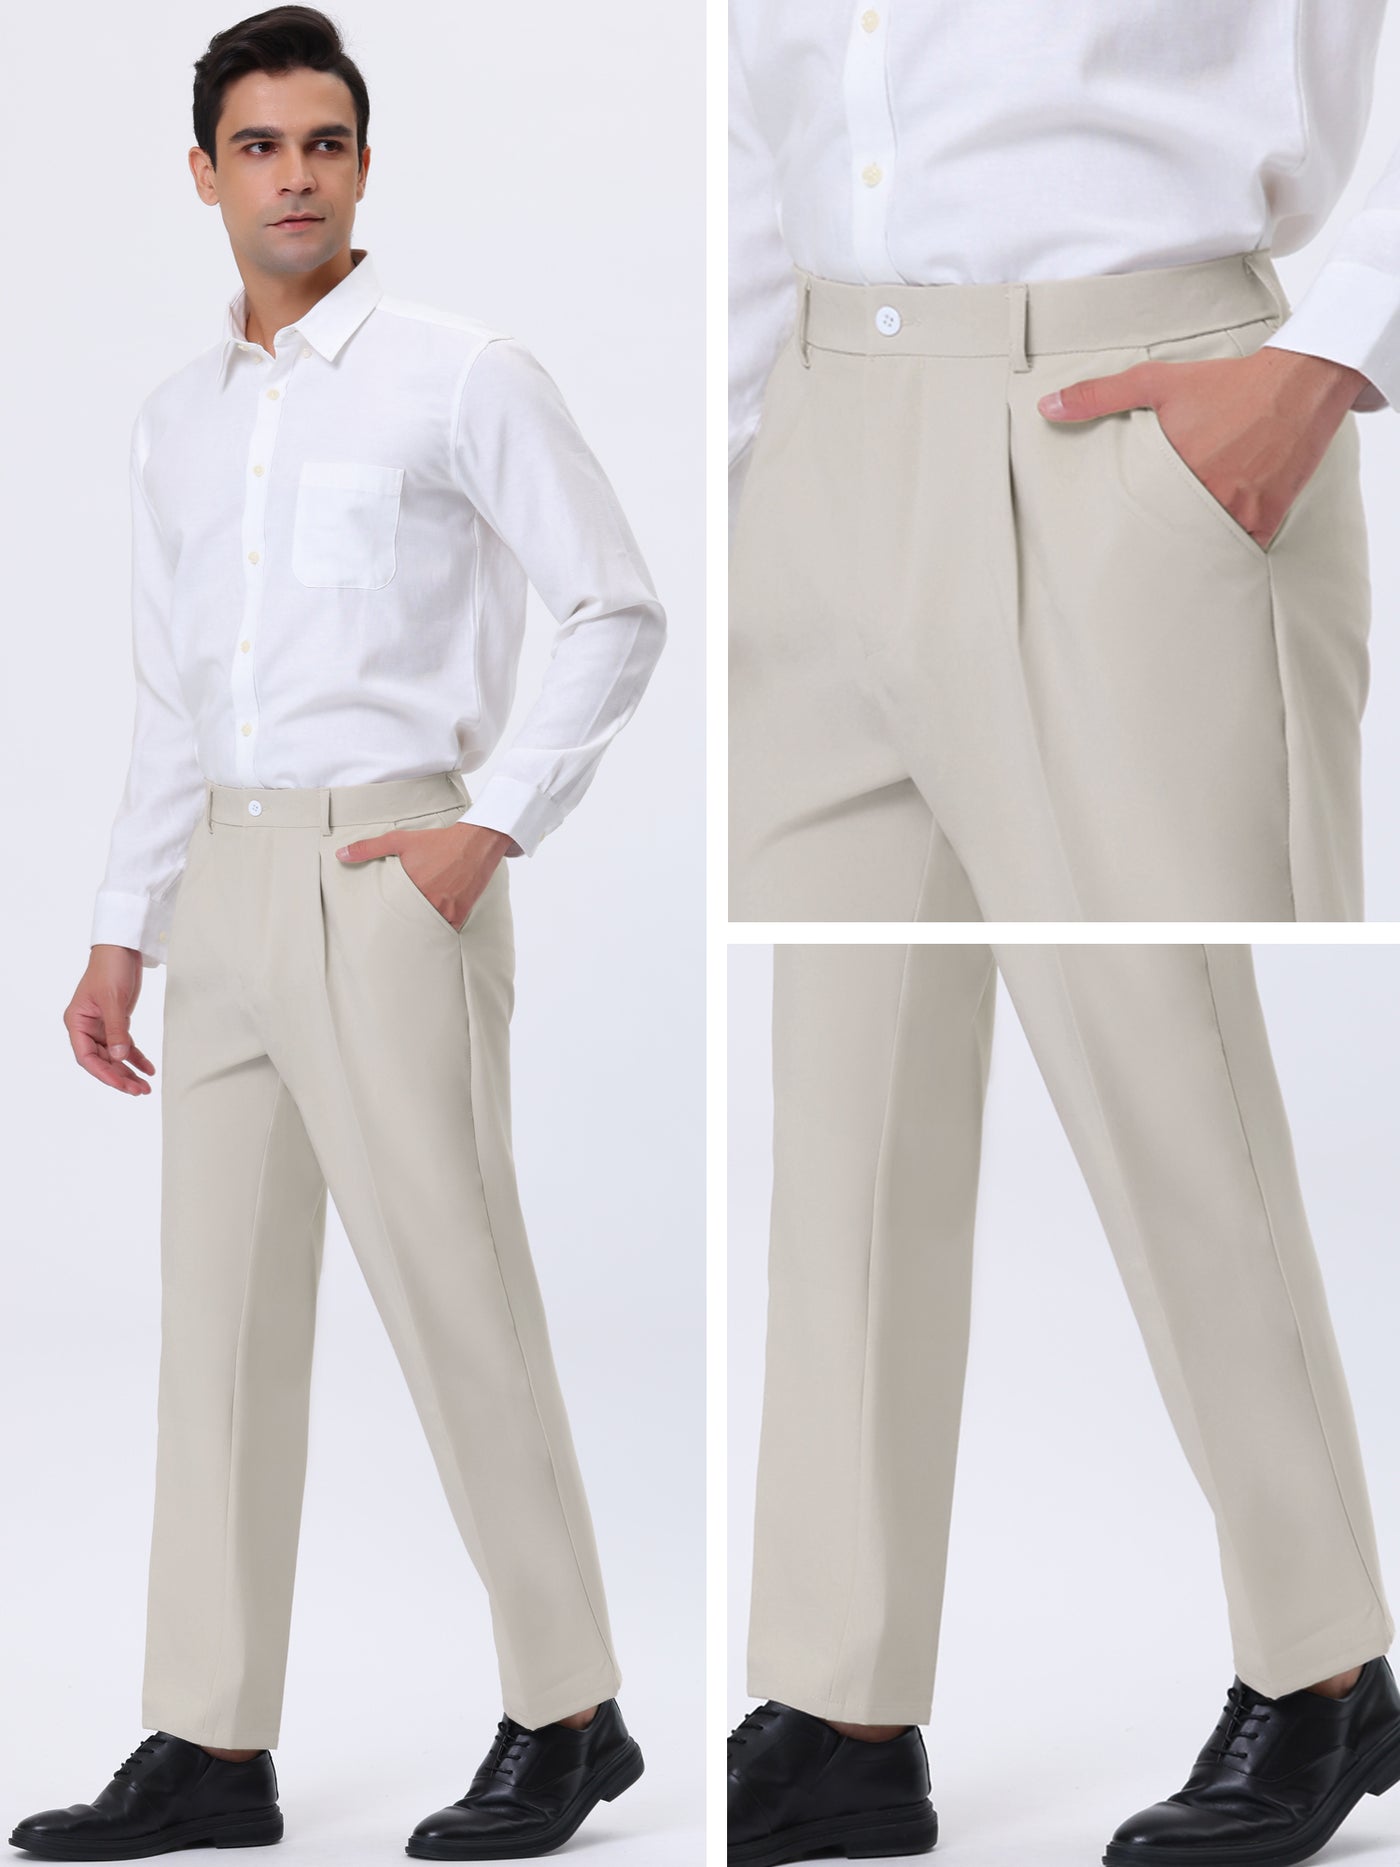 Bublédon Men's Pleat Front Pants Comfort Straight Leg Dress Trousers